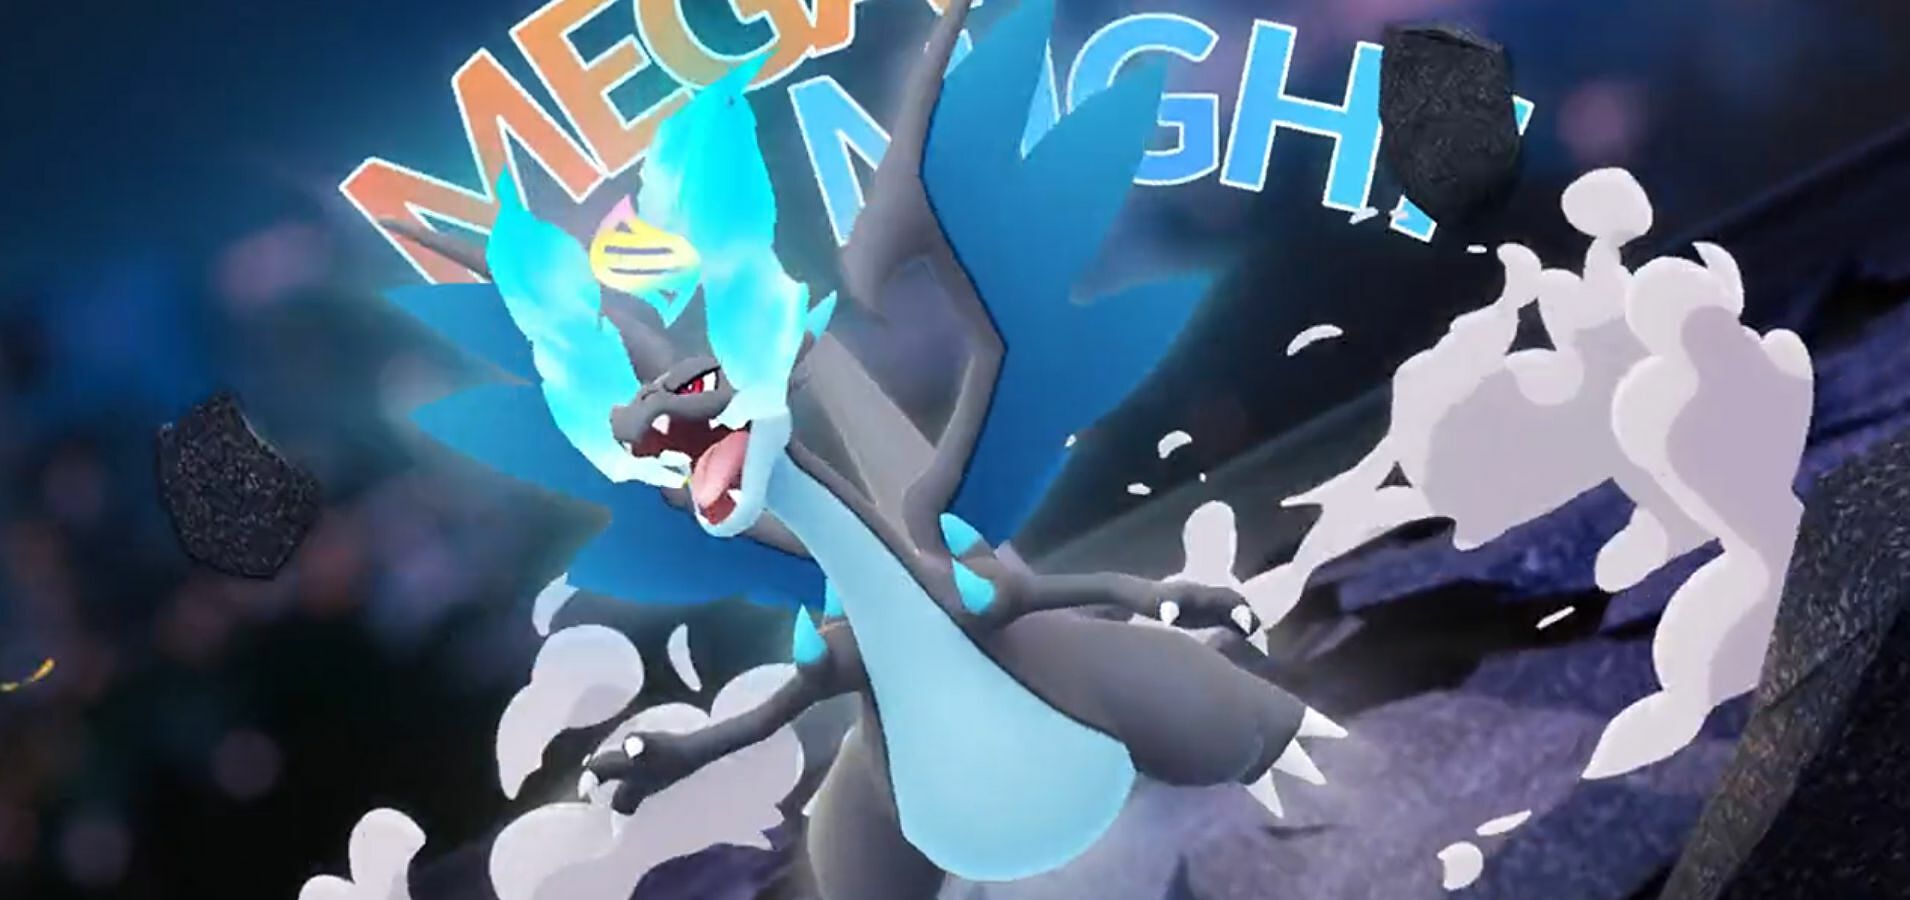 Imagen para Pokémon Go - Investigación Un Megamomento: todas las misiones y recompensas, cuál es la mejor opción